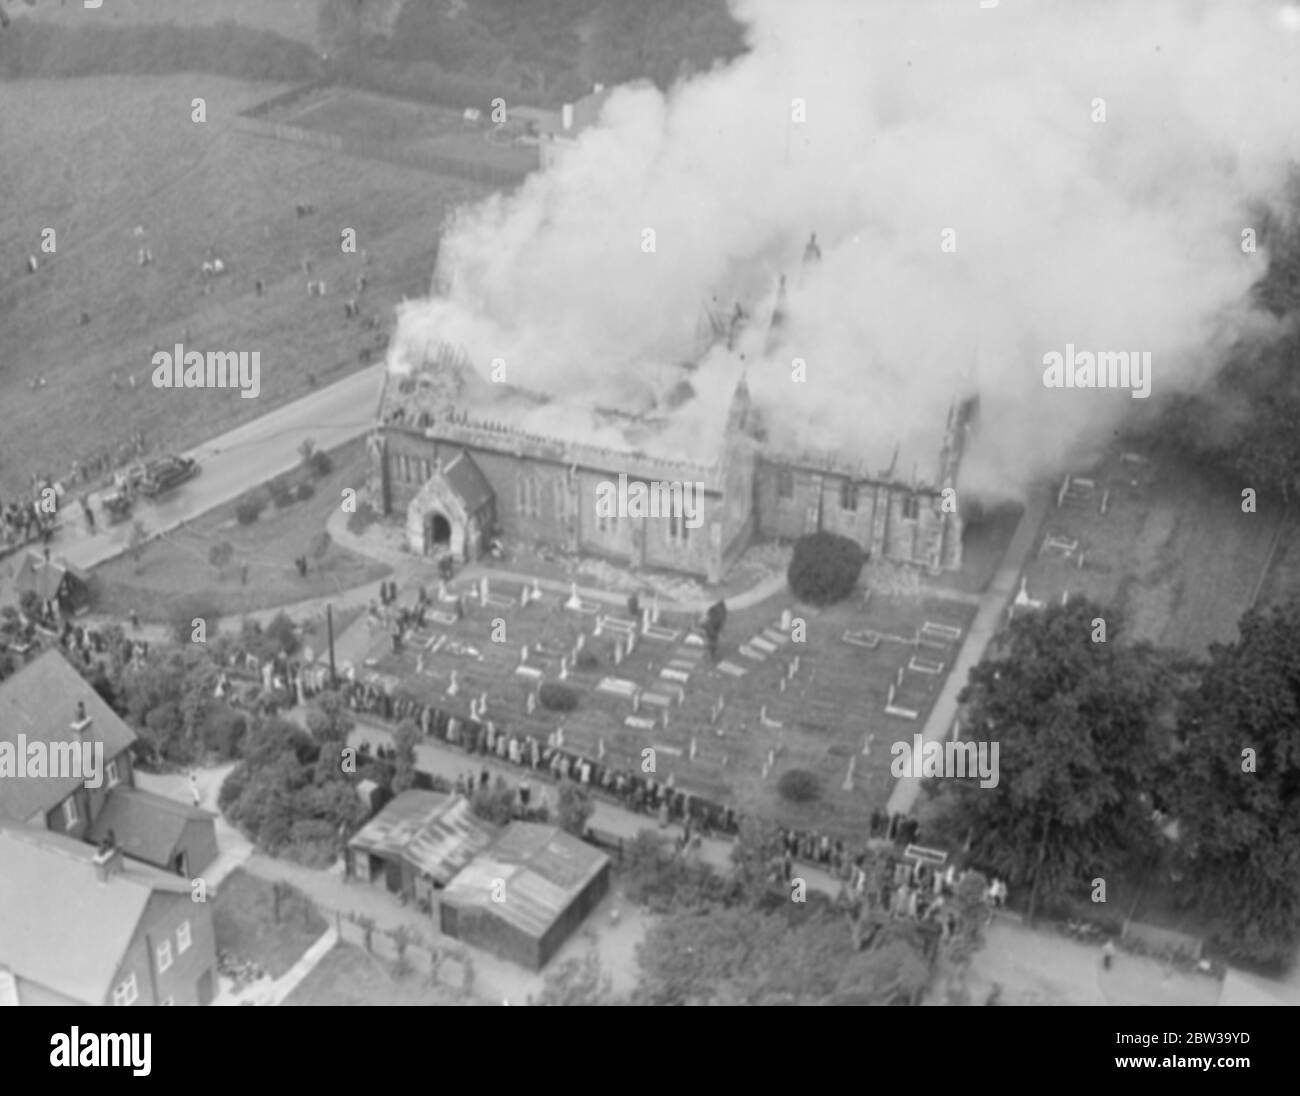 Bischof Stortford Kirche vollständig durch Feuer zerstört. Feuerwehren durch Wassermangel behindert . 21 Juni 1935 Stockfoto